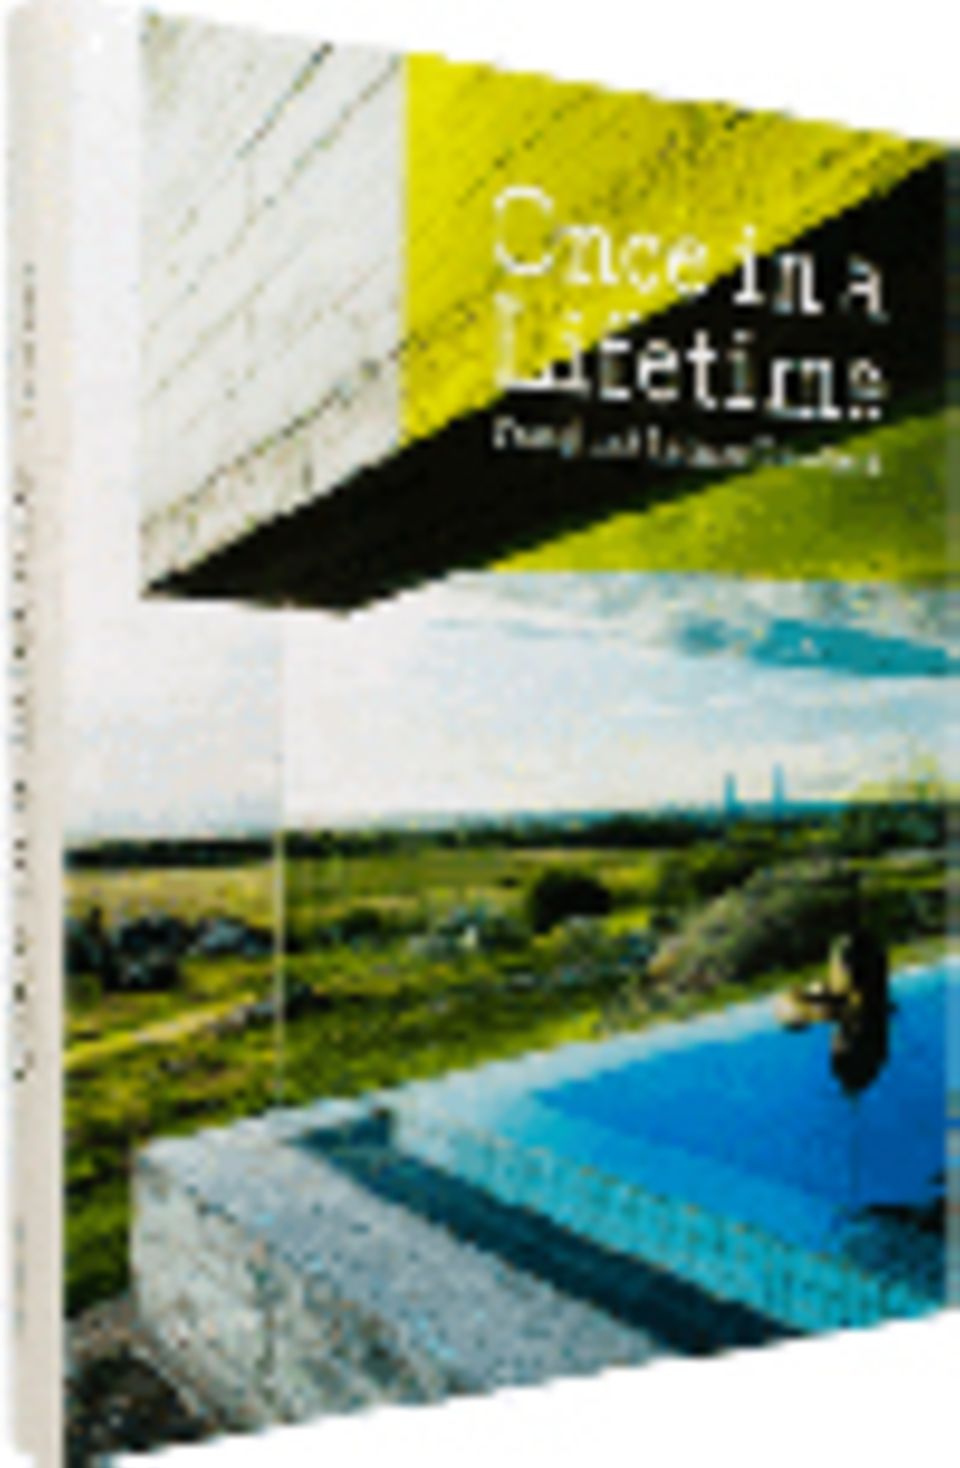 Fotogalerie: Once in Lifetime, Travel and Leisure Redefined, 256 Seiten, 2012, Text in Englisch, 39,90 Euro, erschienen im Gestalten Verlag Berlin